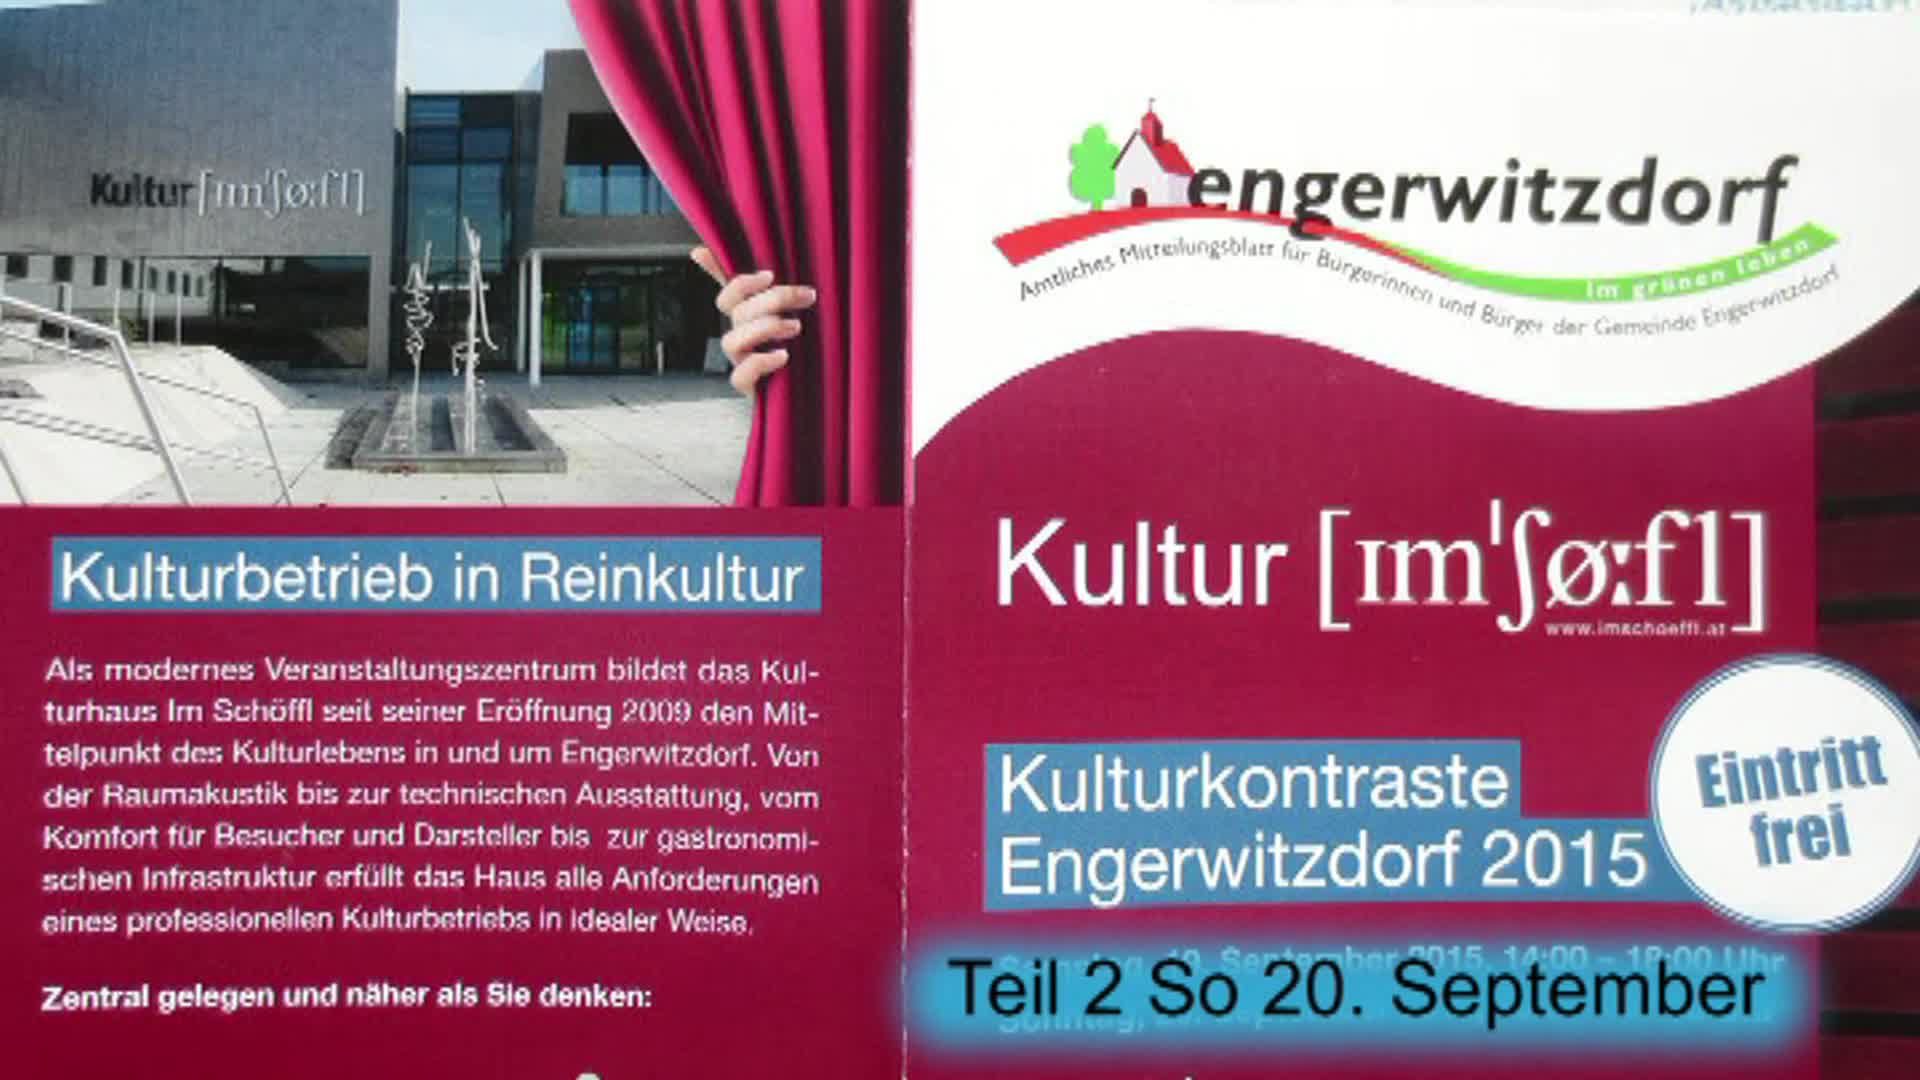 Kulturkontraste Engerwitzdorf 2015 - Teil 2